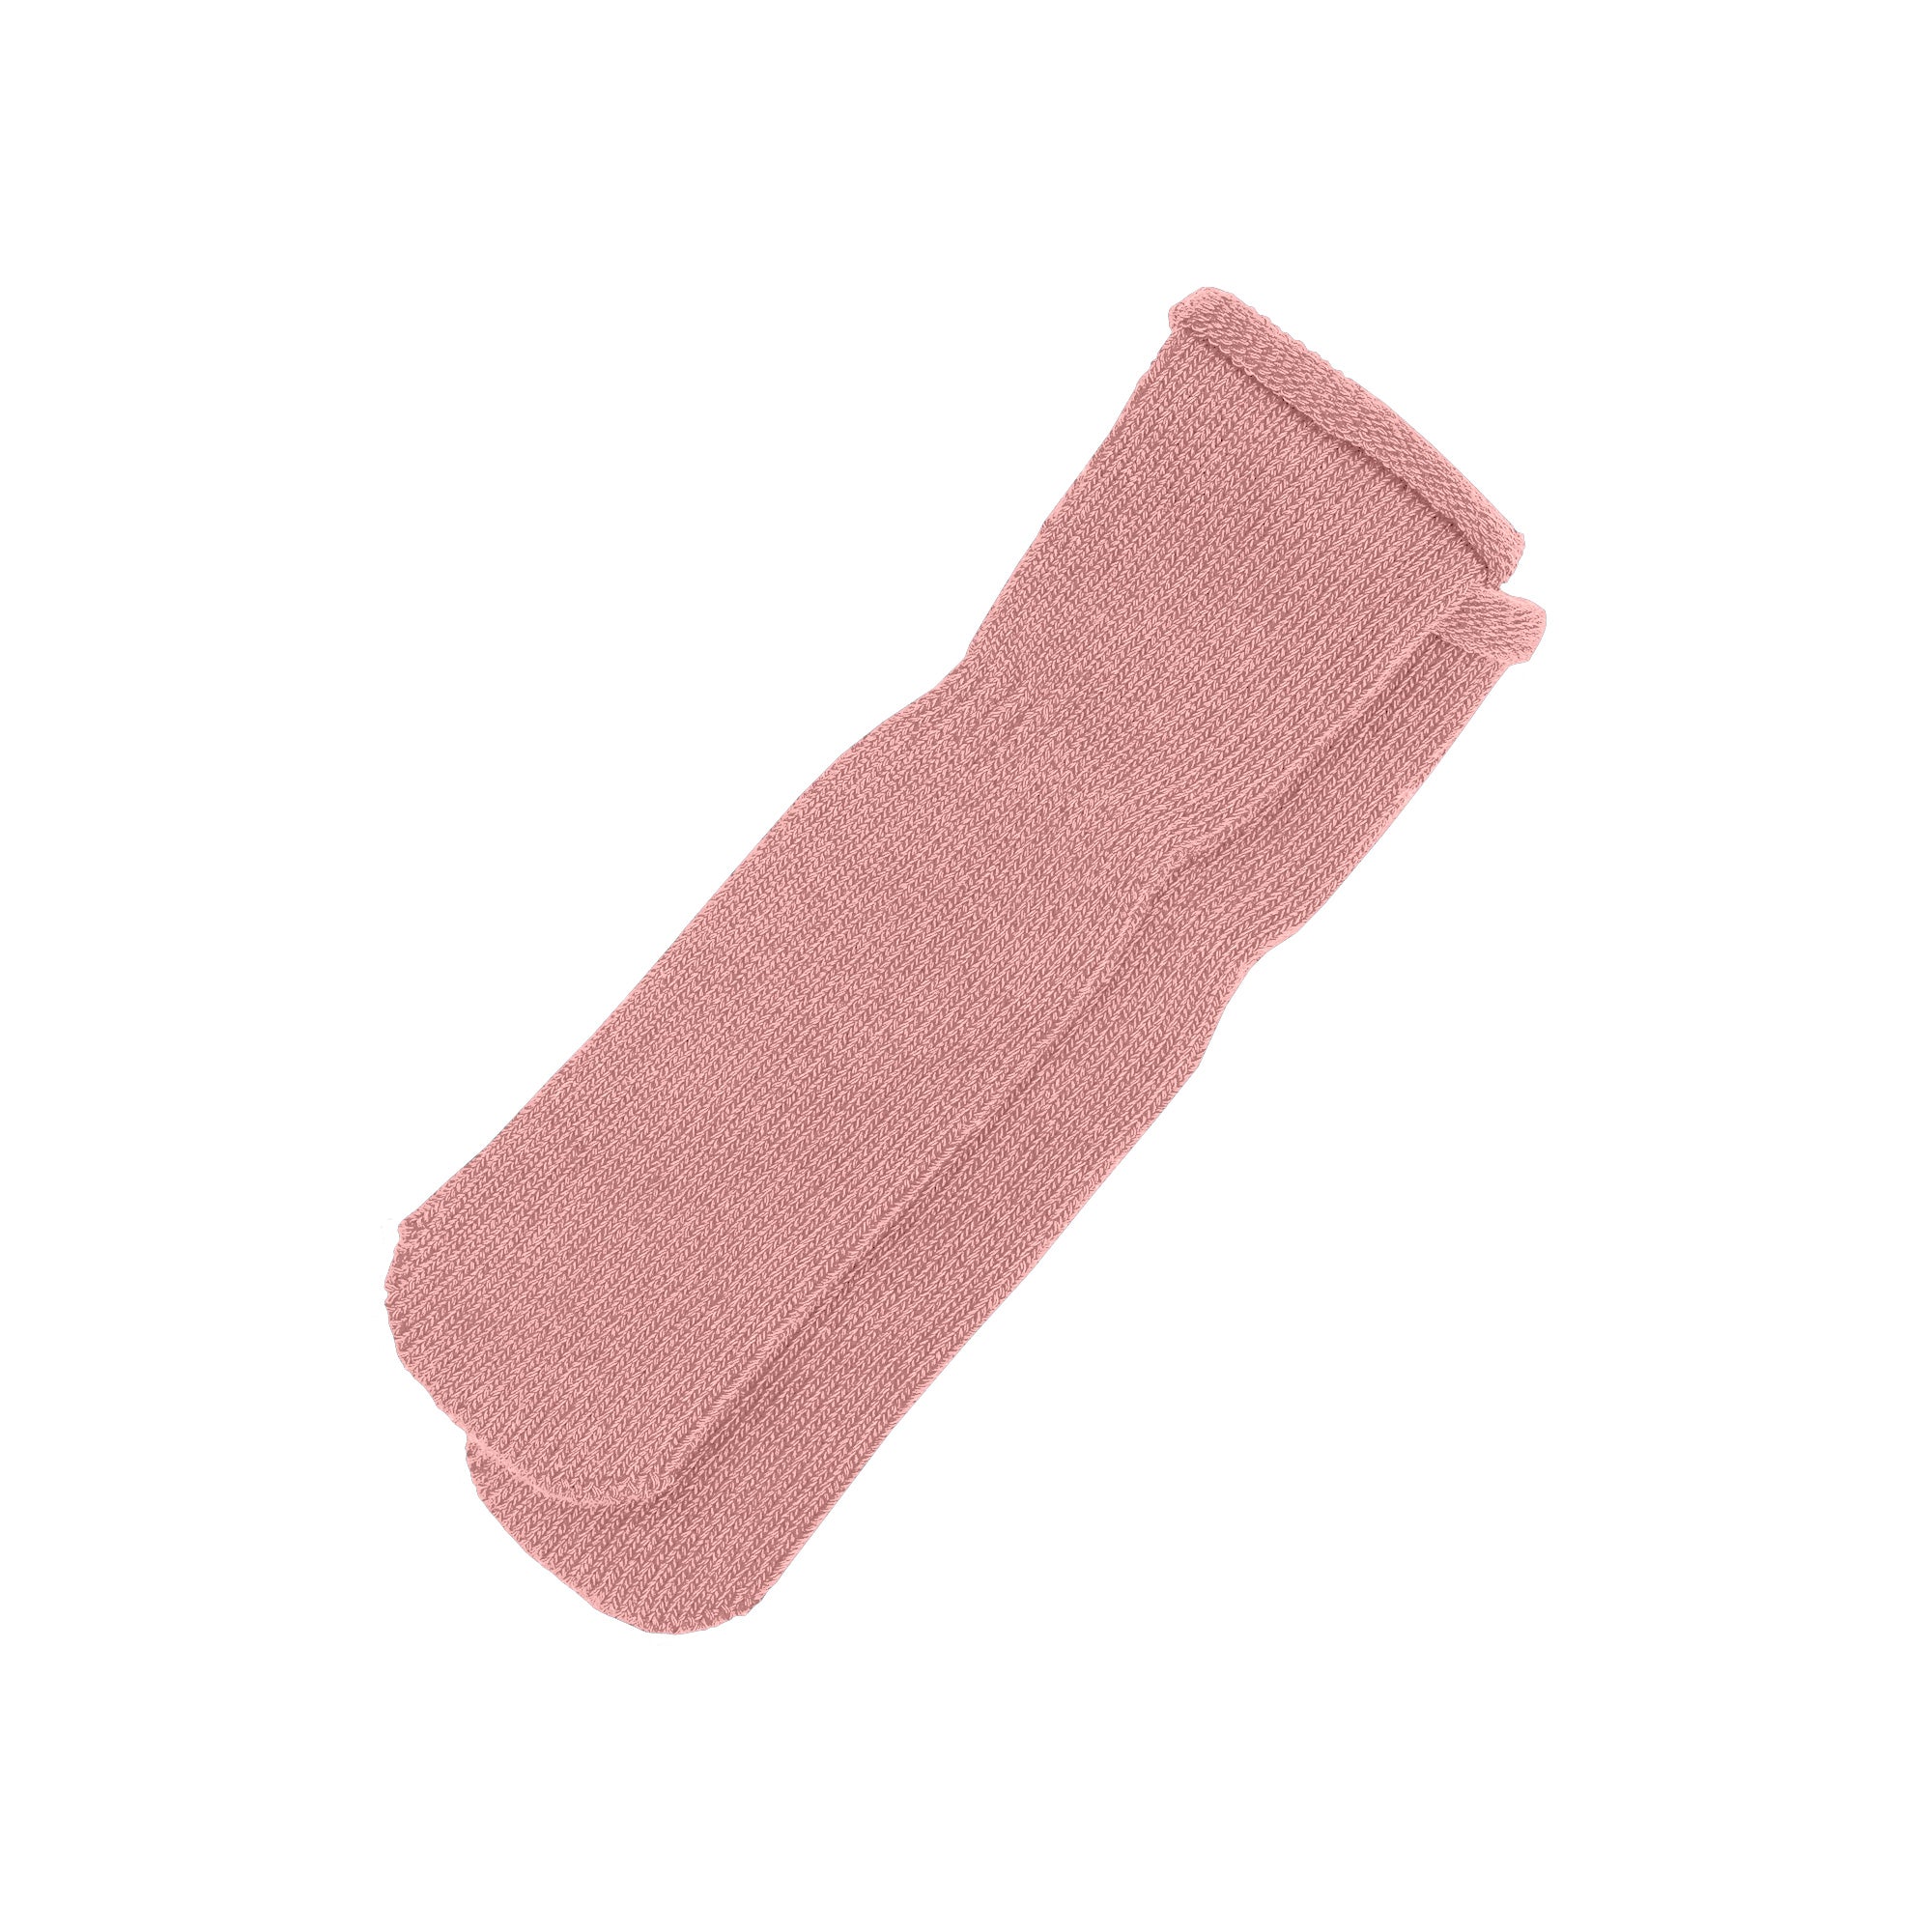 Kids' Knit Baby Socks Cotton Beige